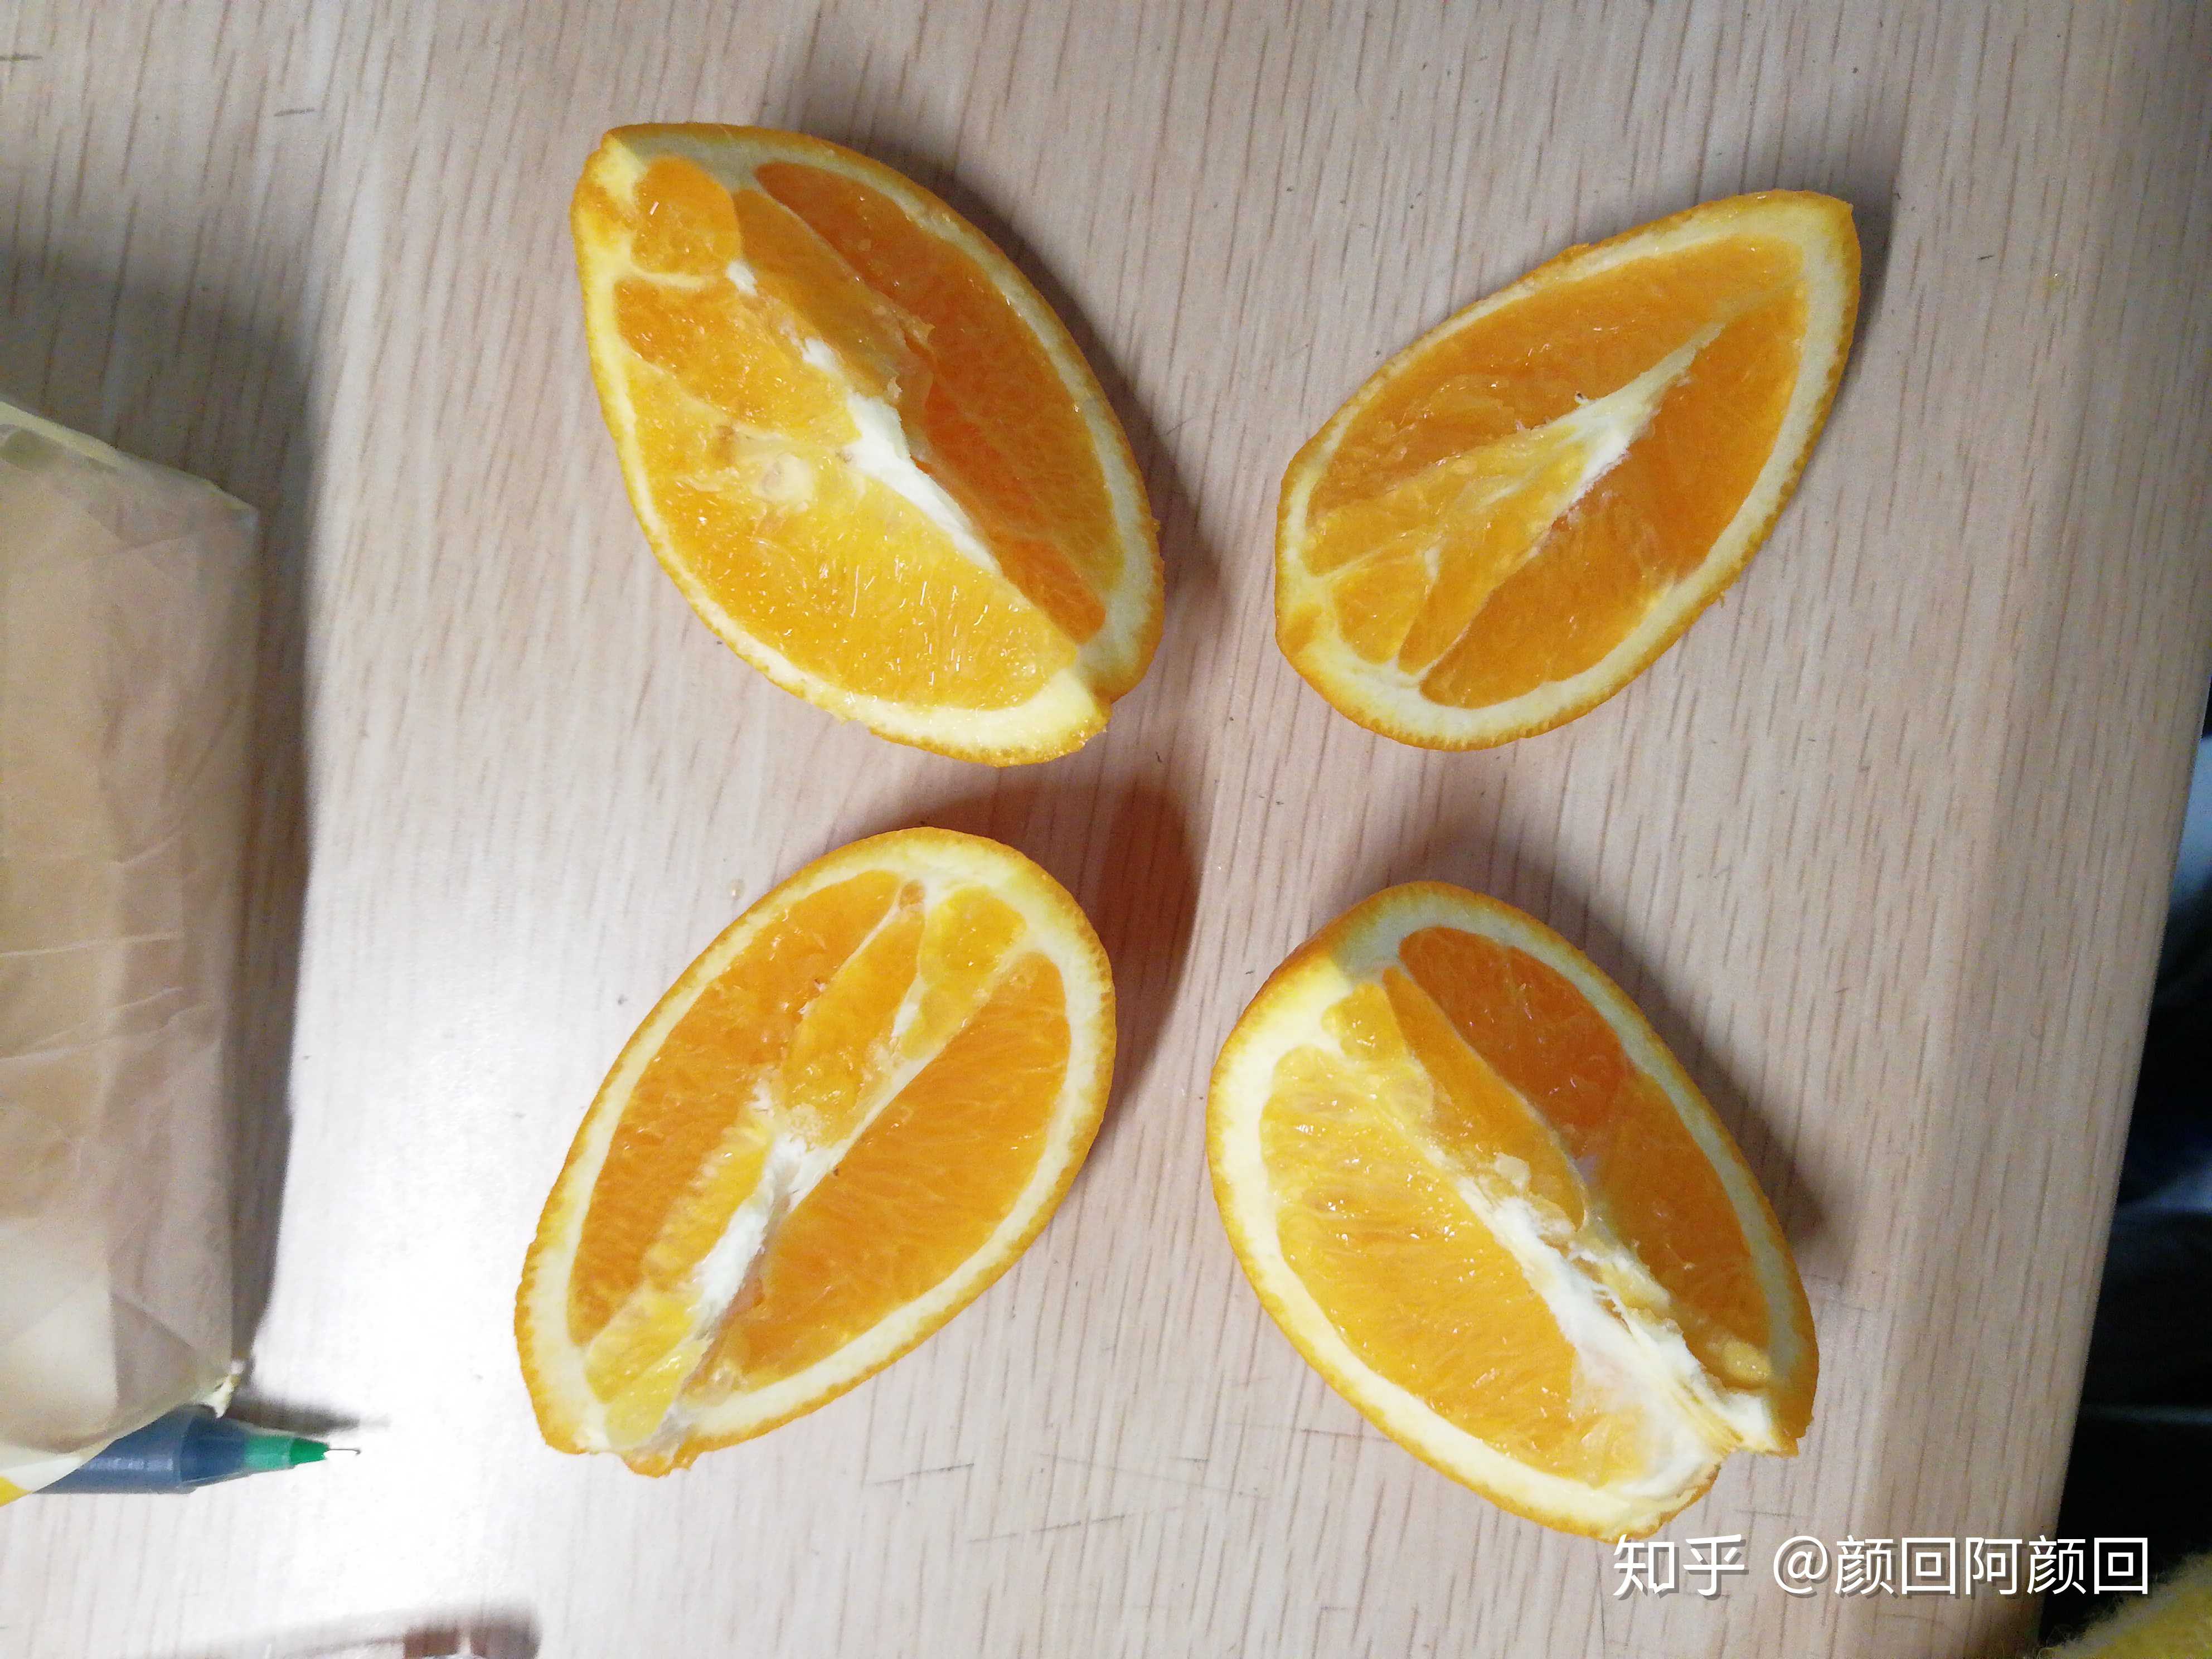 橘子和橙子的区别就是橙子可以这样切!